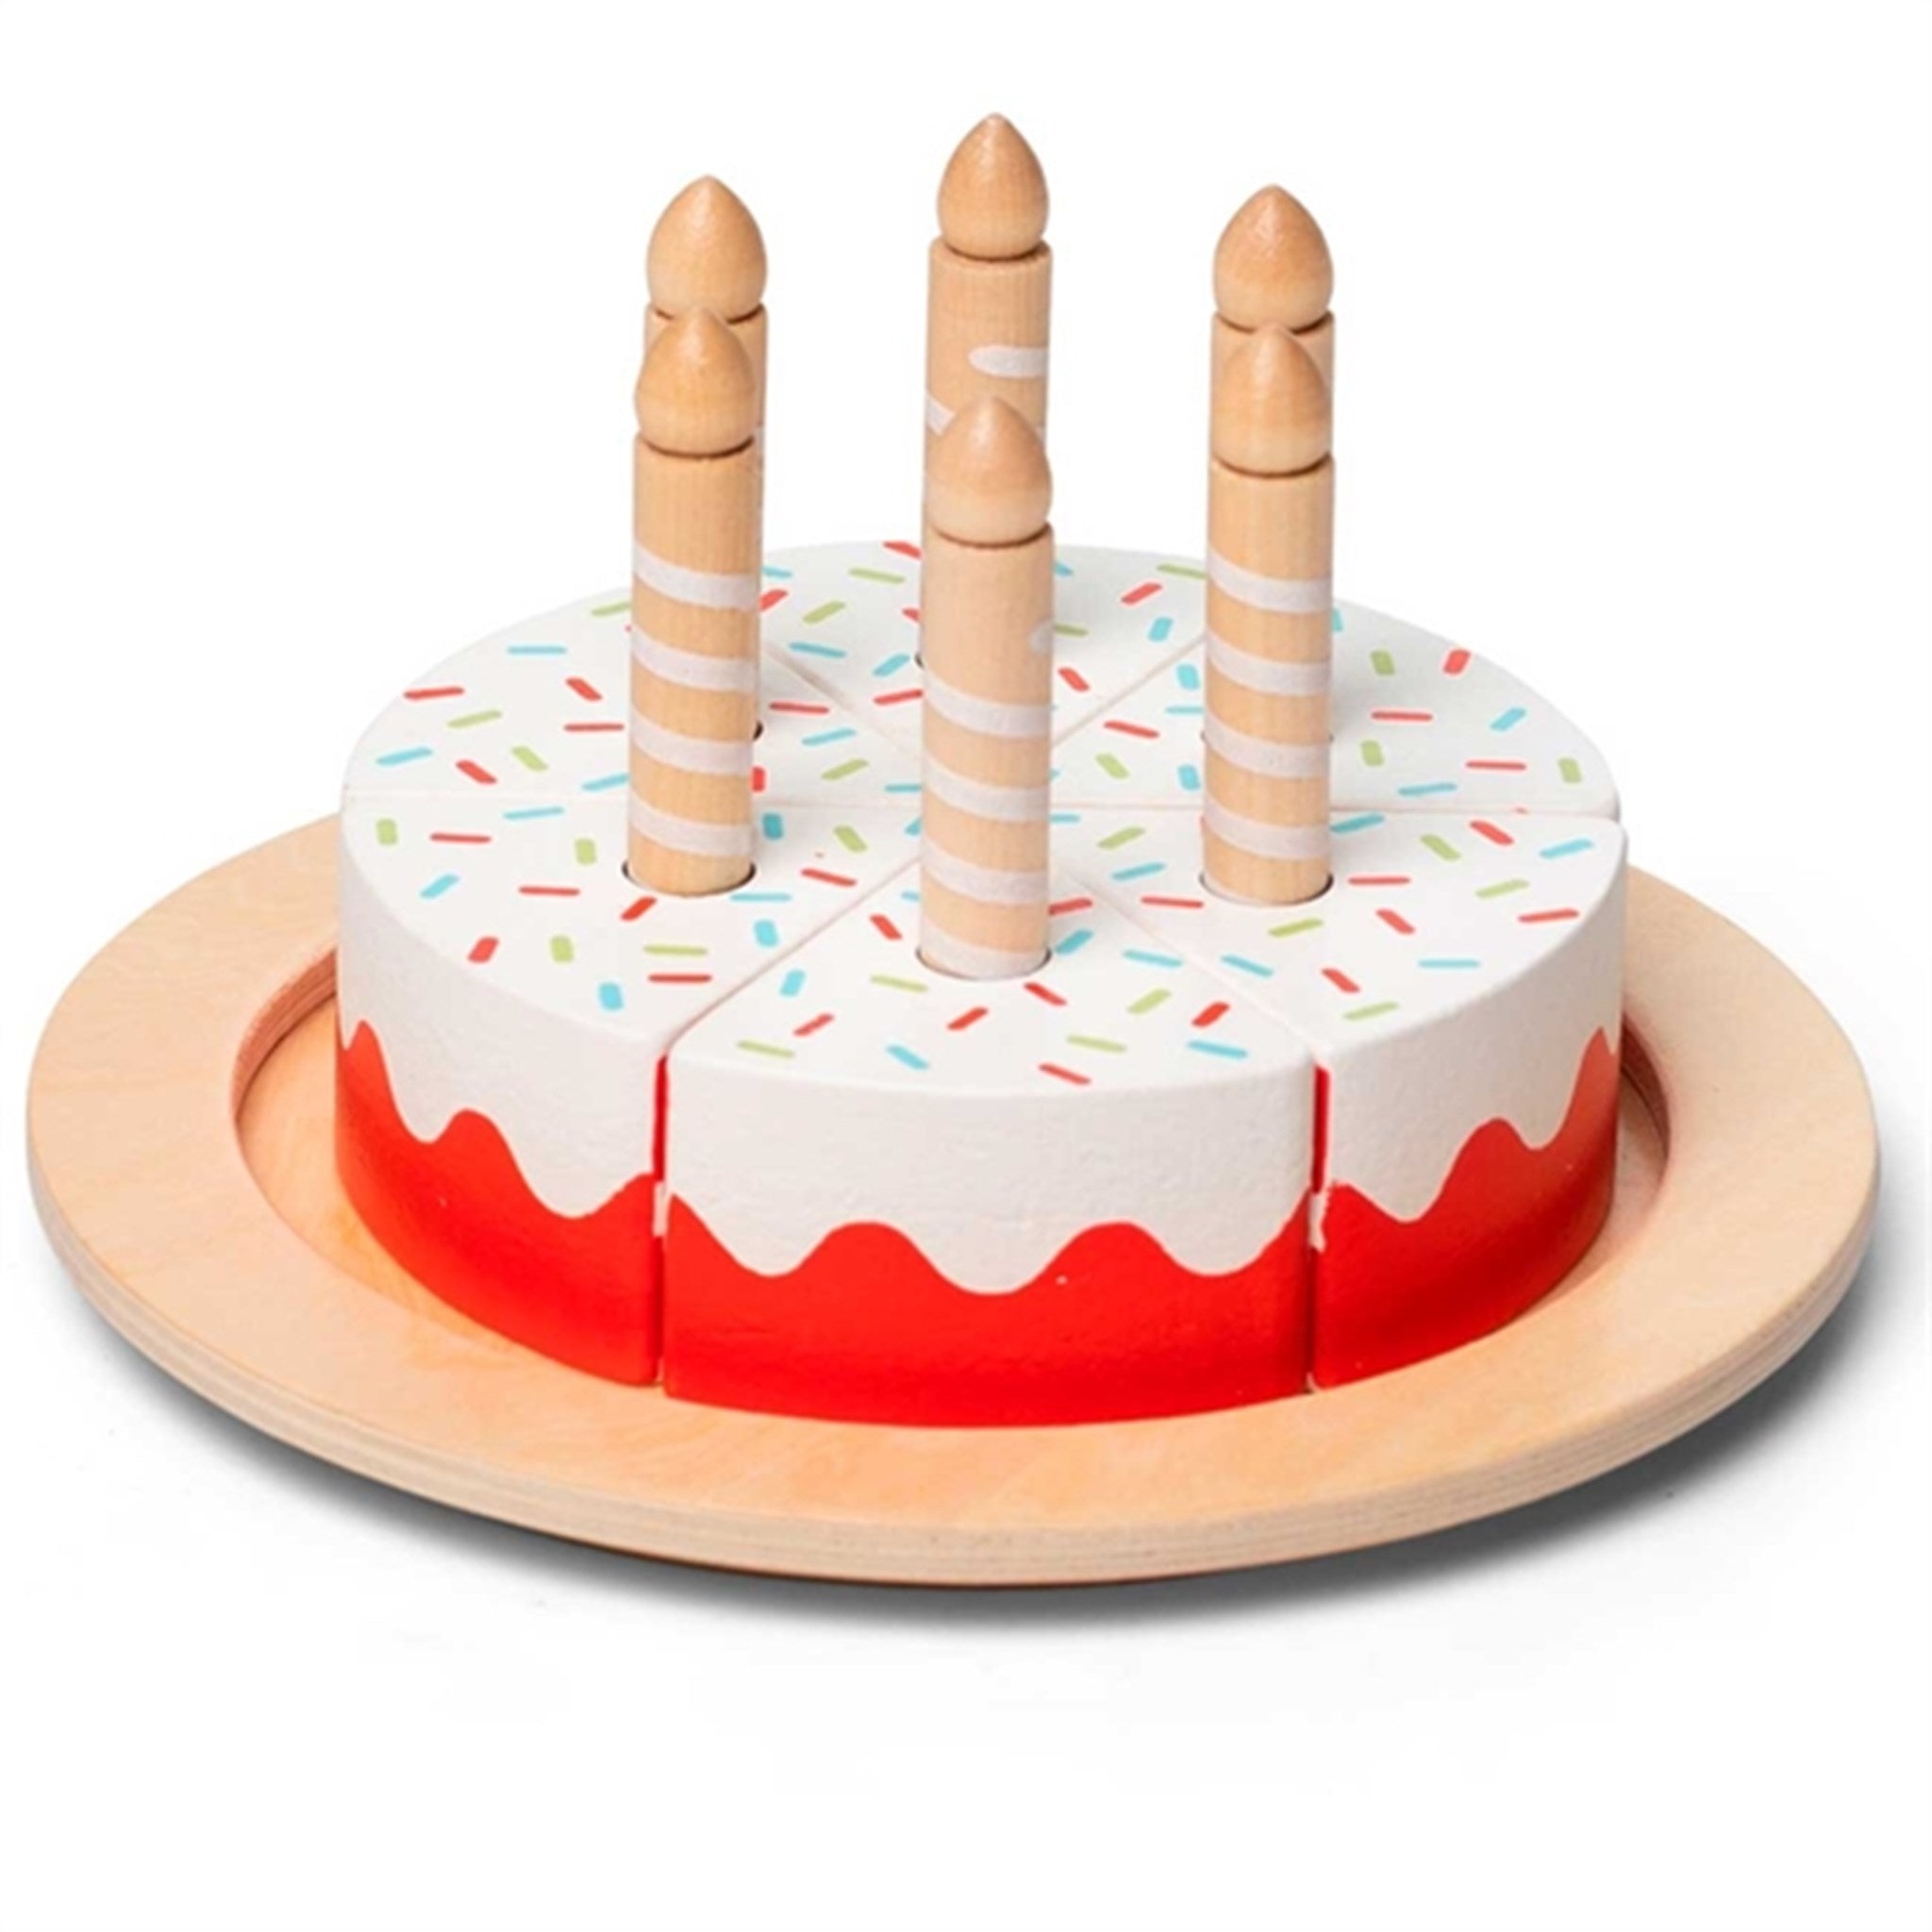 MaMaMeMo Birthday Cake